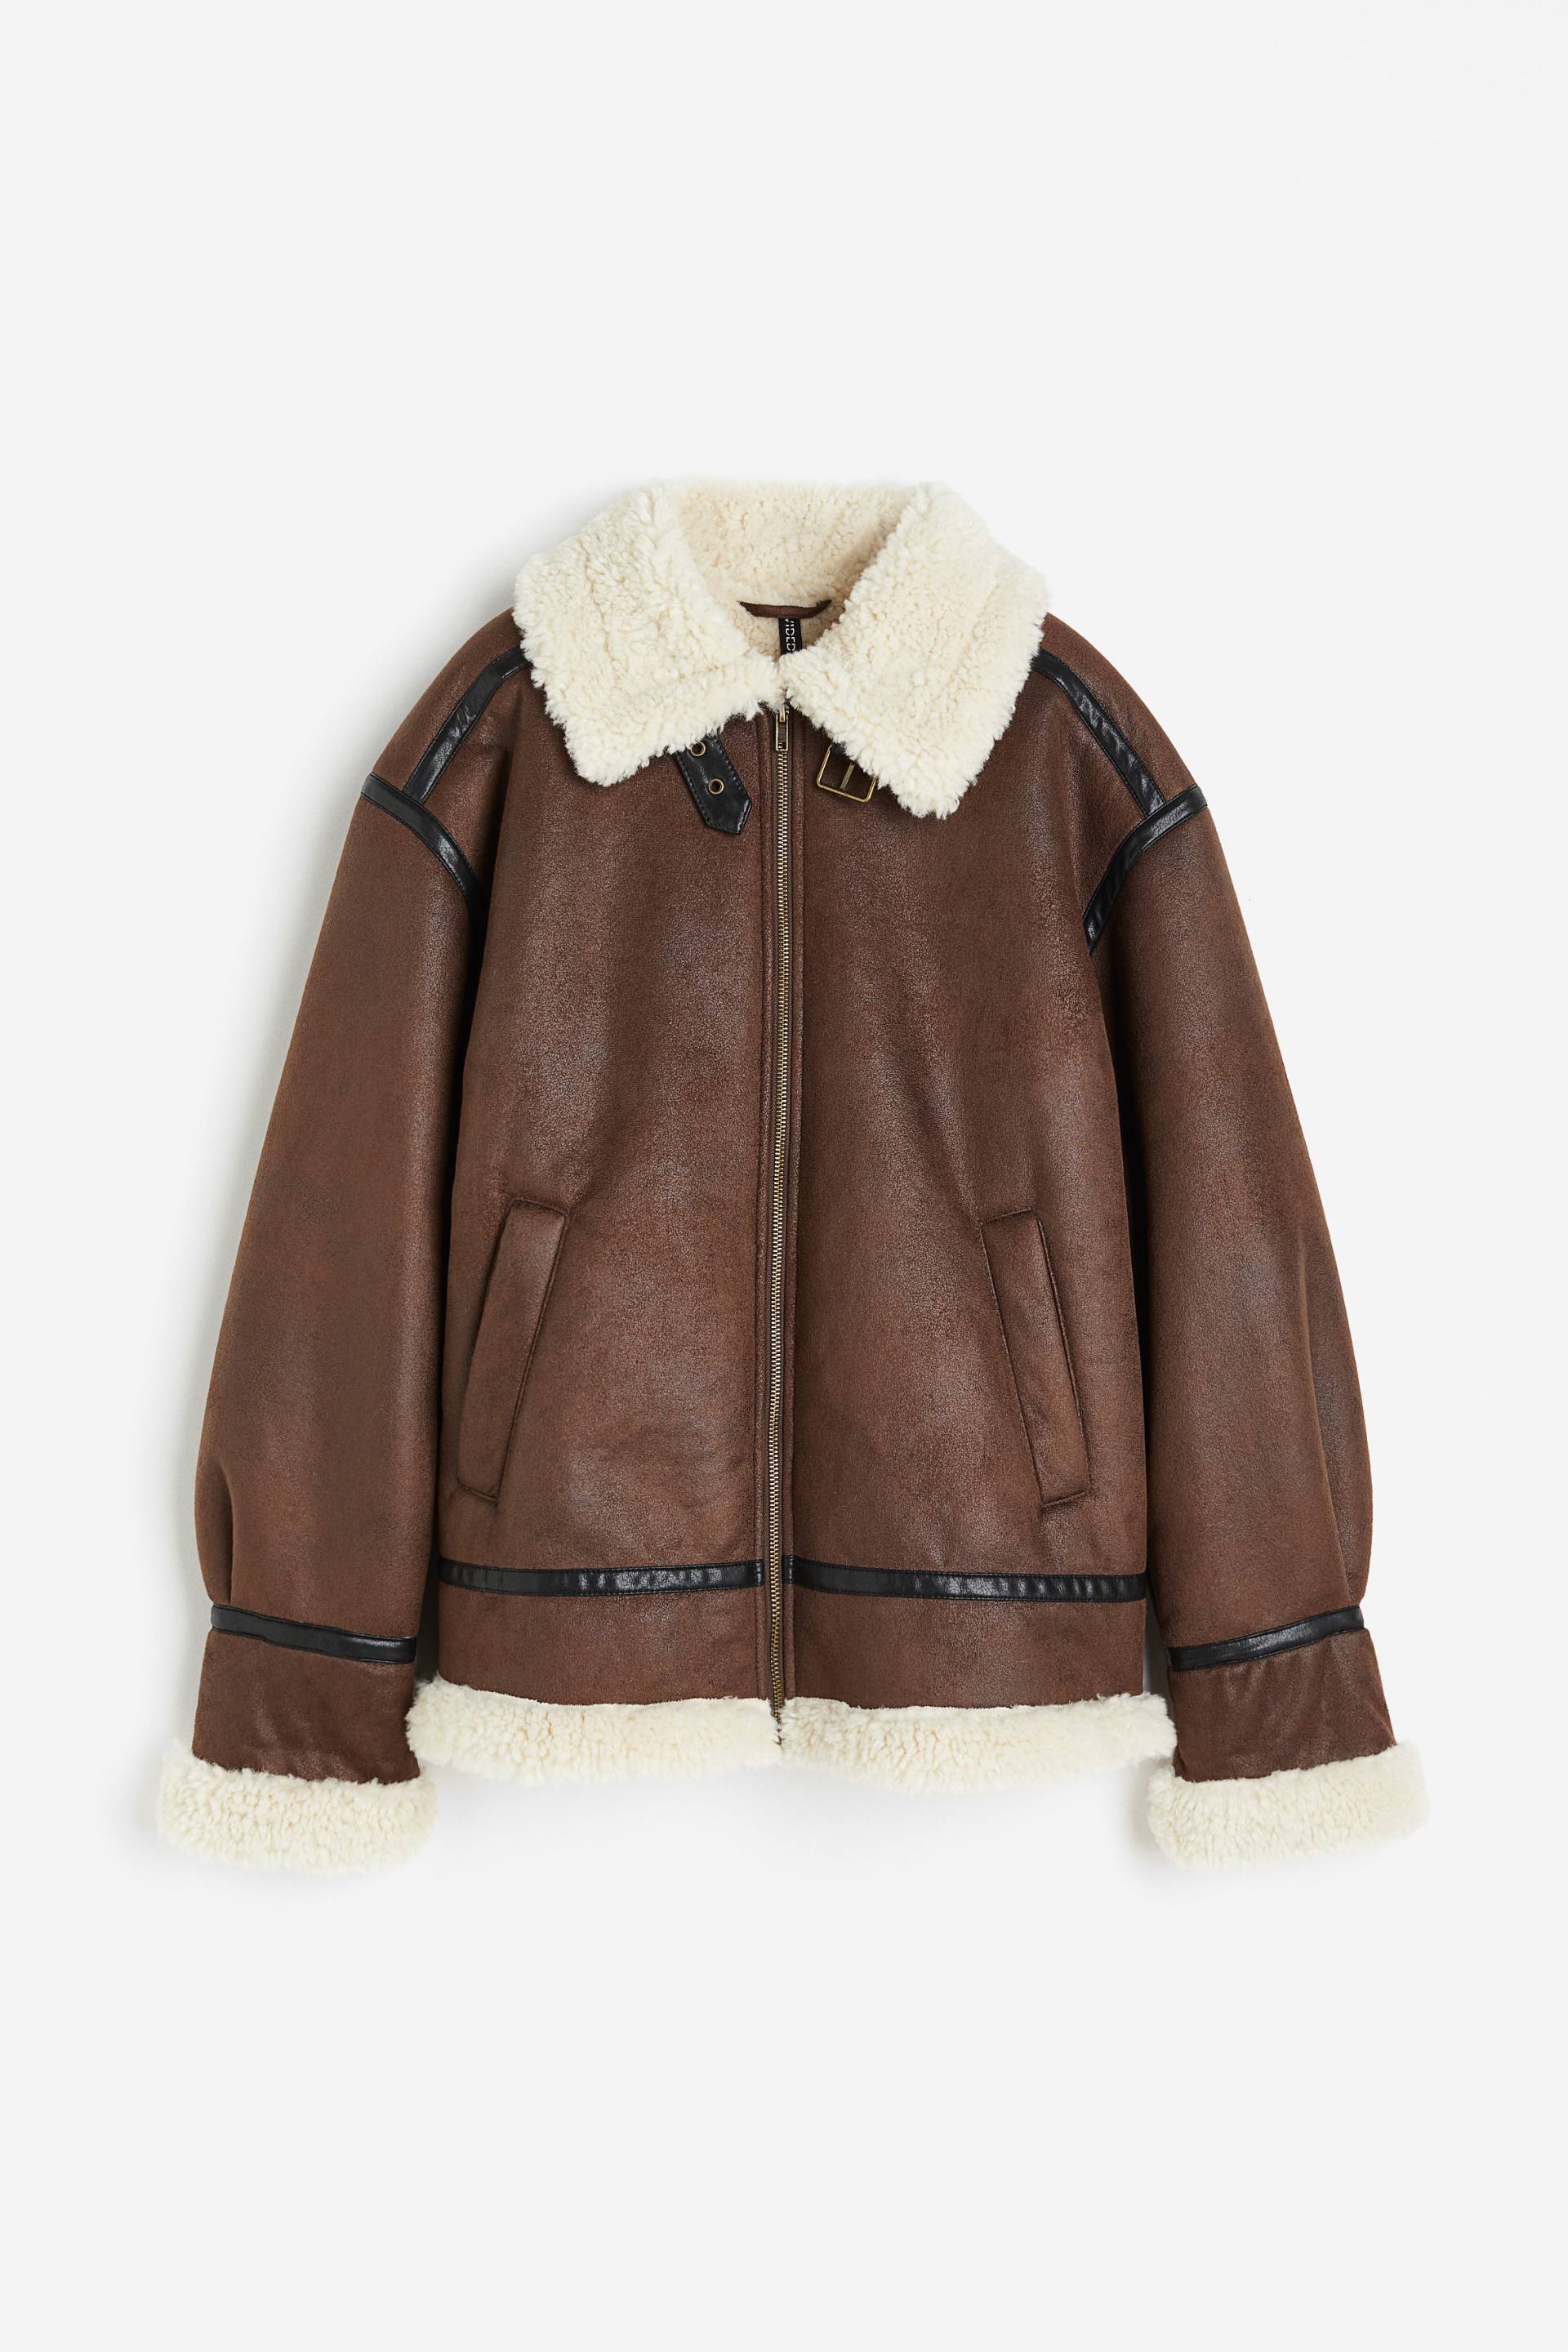 H&M Oversized Jacke mit Teddyfleece Braun, Jacken in Größe XS. Farbe: Brown von H&M